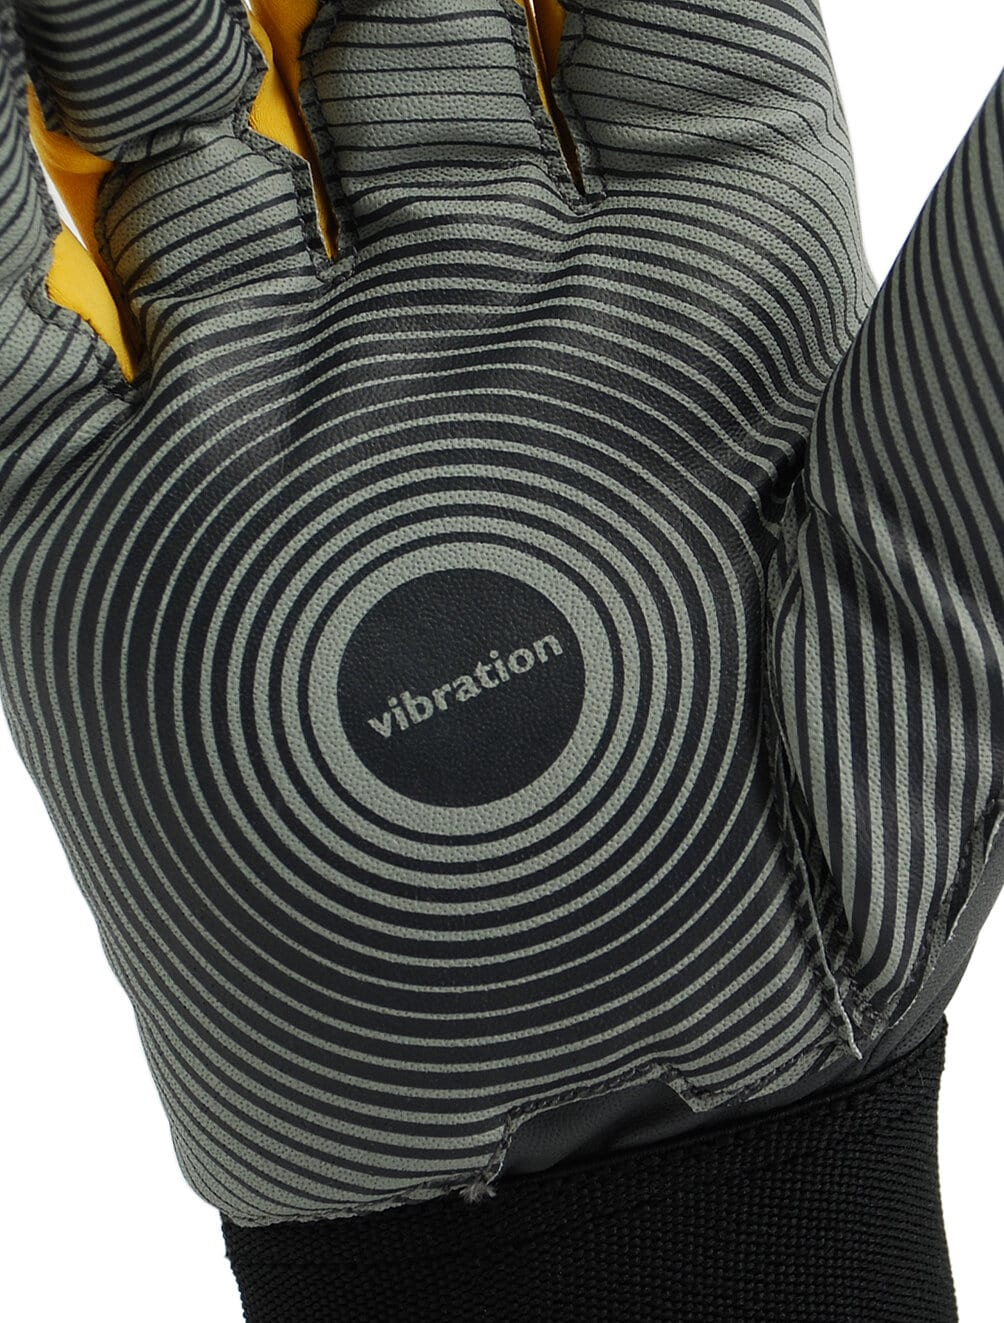 Vibrationsdæmpende handske 9180 Verktygsboden